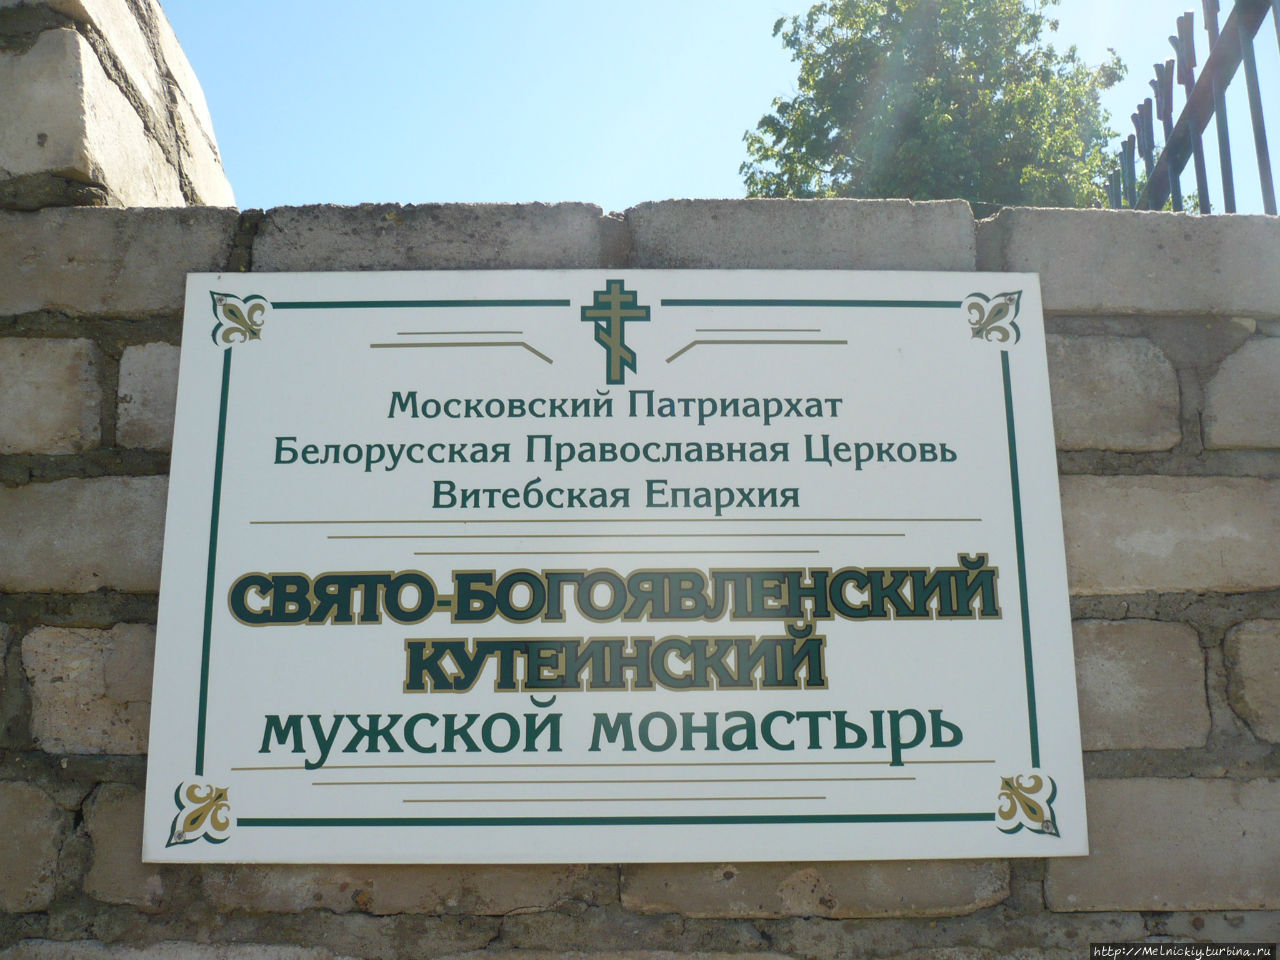 Свято-Богоявленский Кутеинский монастырь / Holy Epiphany Kucein monastery